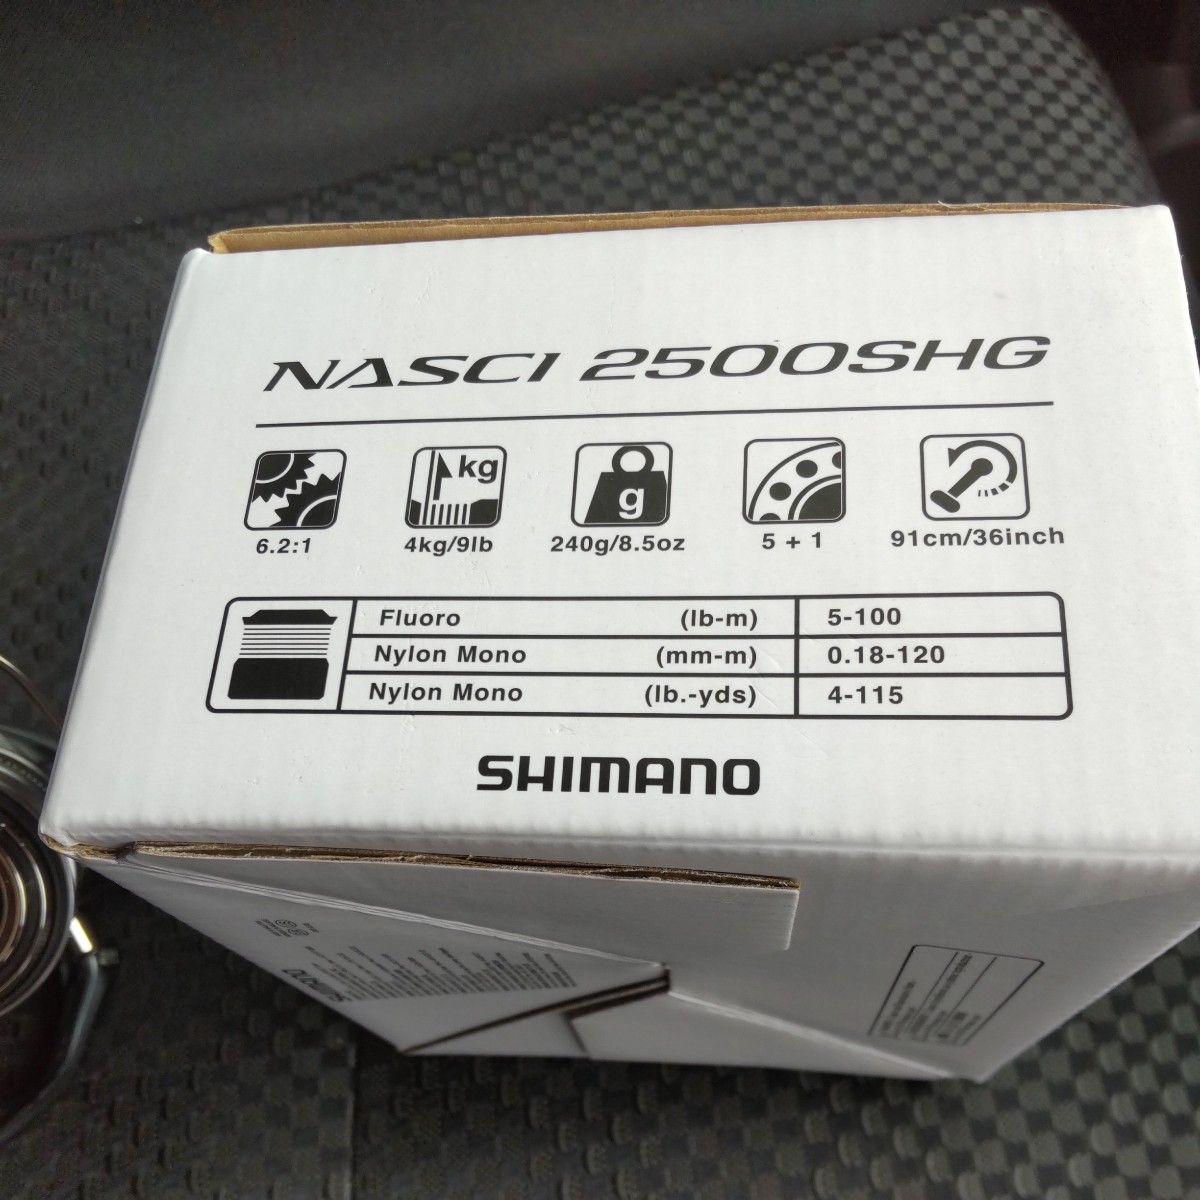 SHIMANO 21 NASCI 2500SHG シマノ 21 ナスキー 2500shg